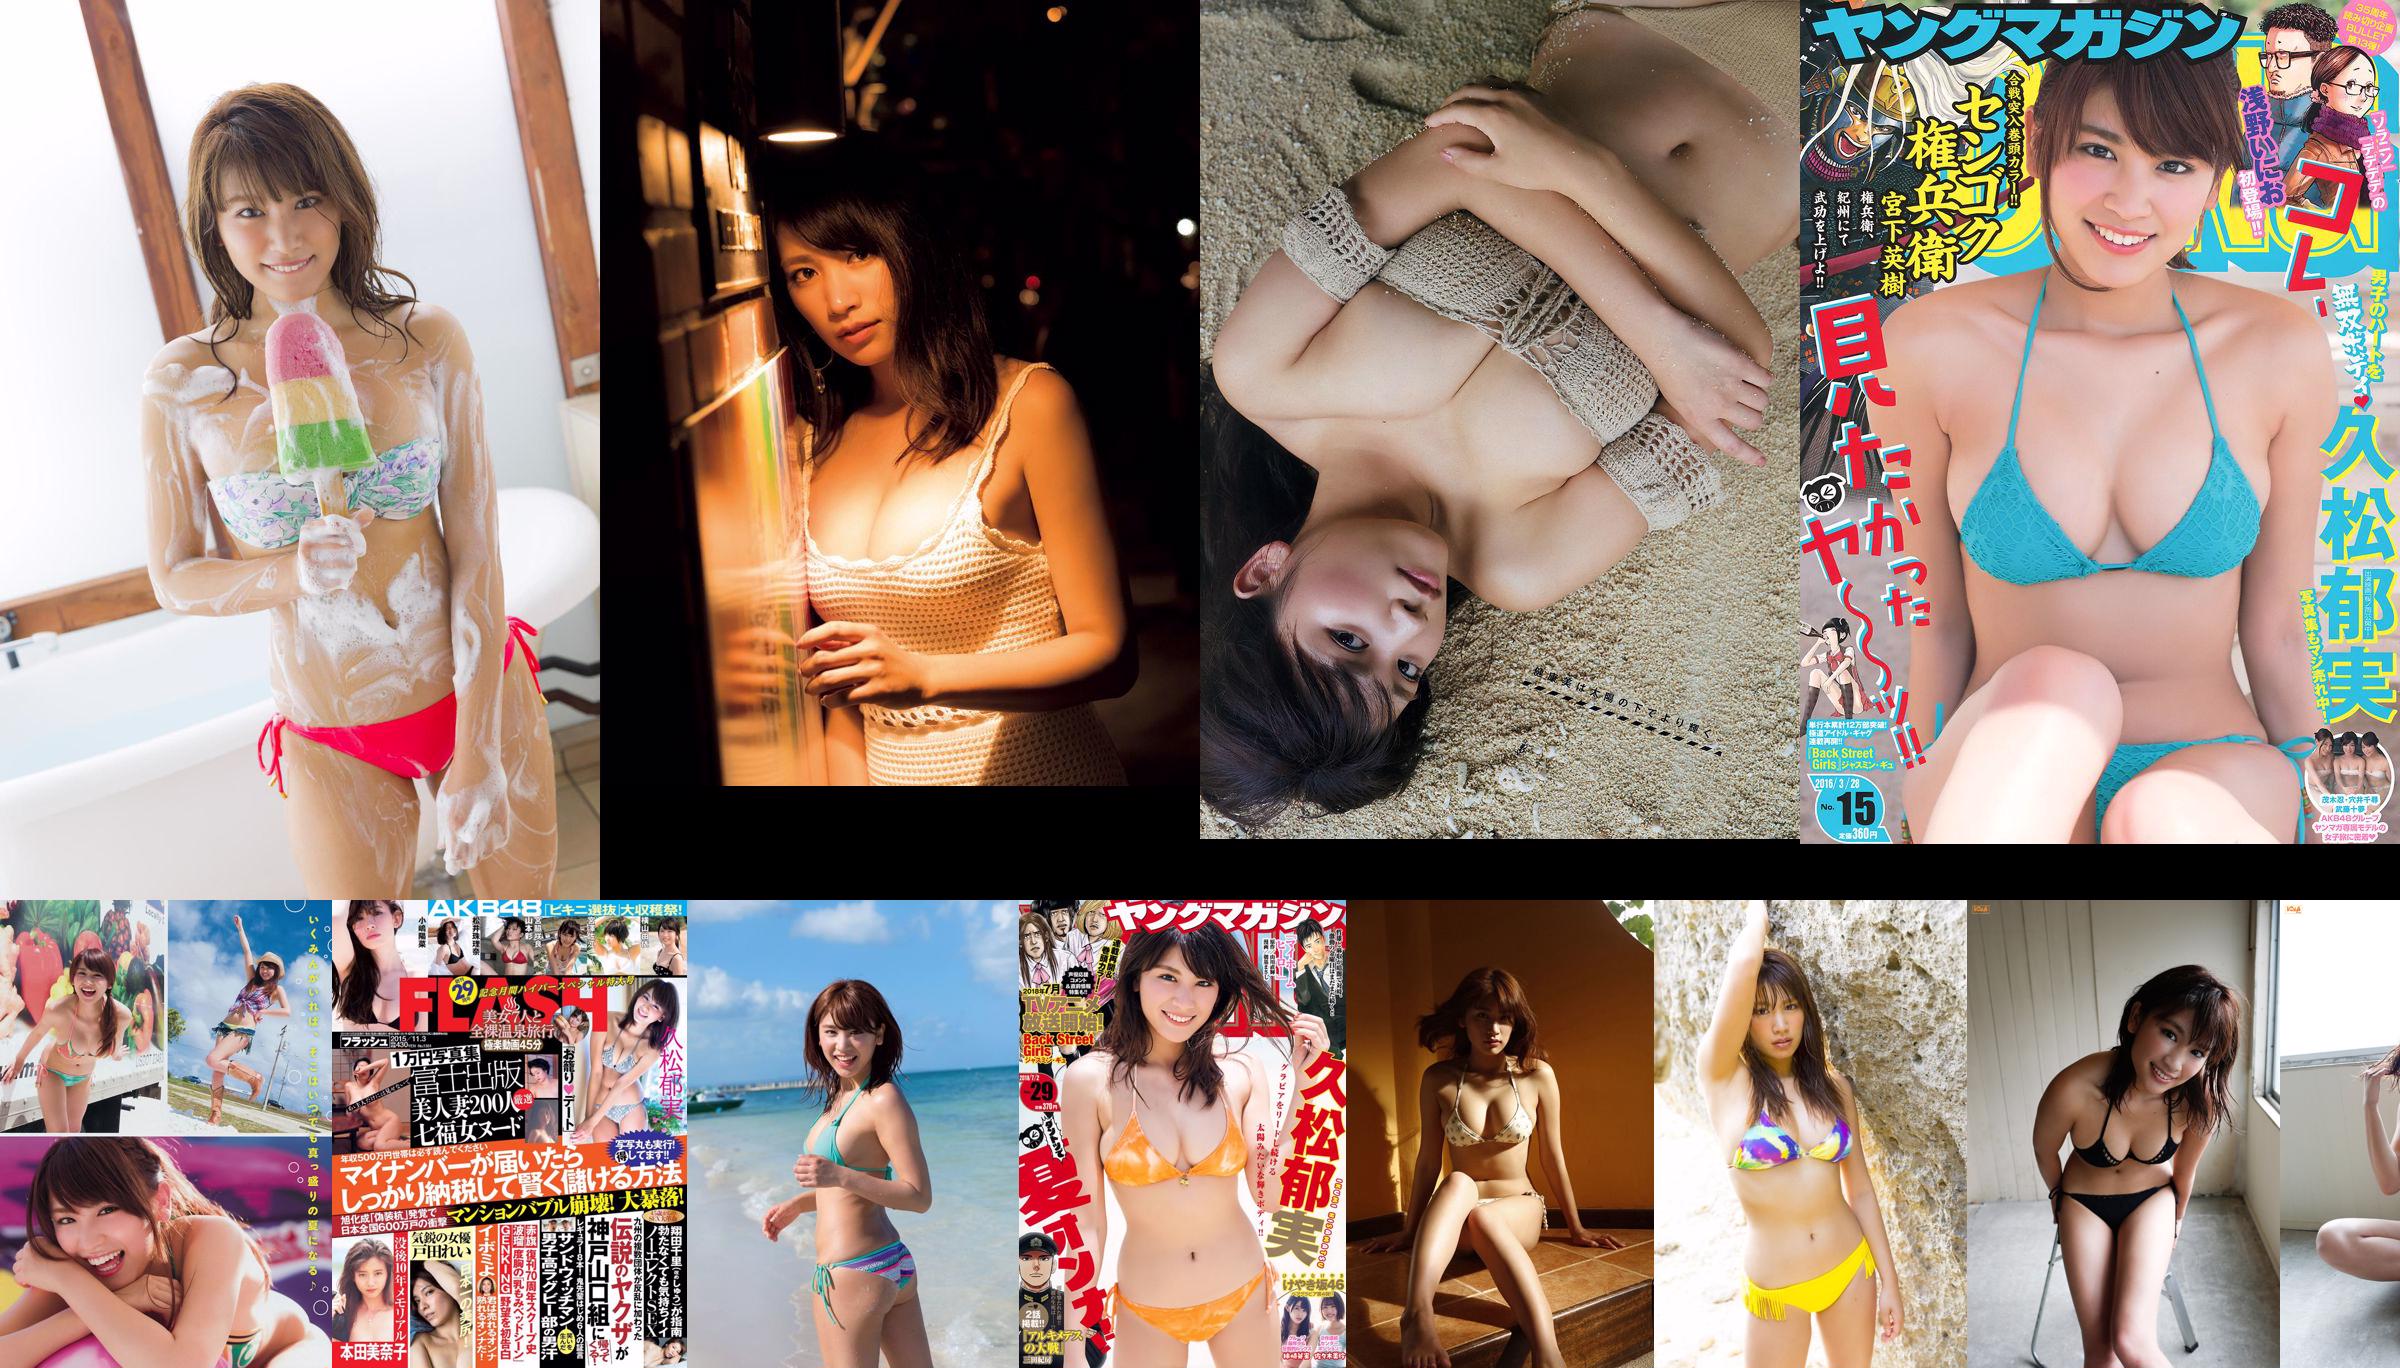 [Young Magazine] Revista de fotografia Hisamatsu Ikumi e Imaizumi Yui No.51 em 2017 No.56ea7a Página 1